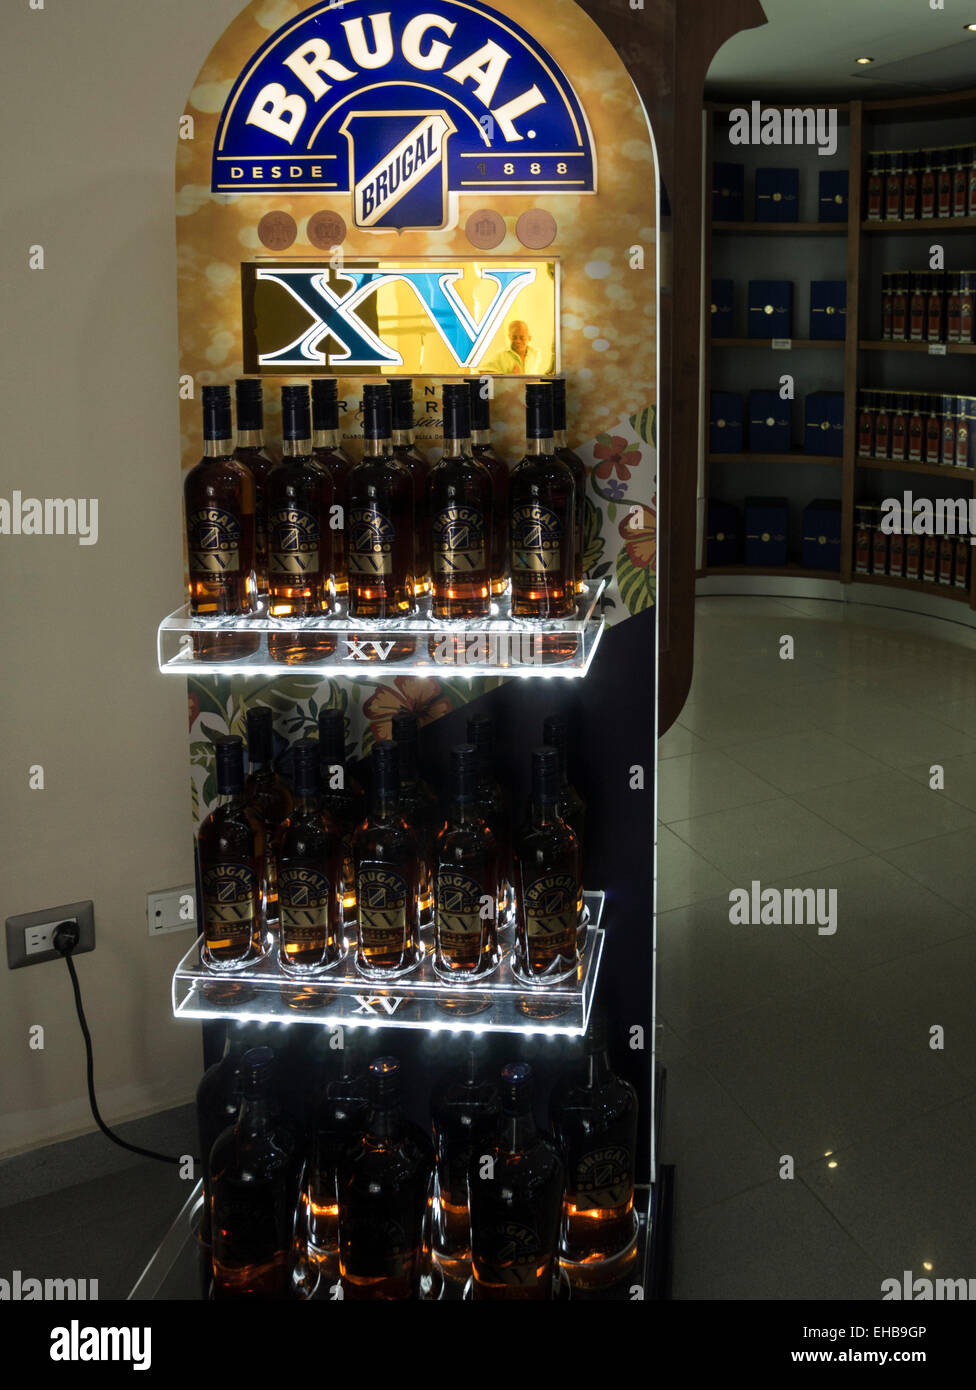 Les bouteilles de rhum Brugal Stand affichage dans la chambre d'échantillonnage de l'usine de fabrication et de Puerto Plata République Dominicaine se transforme en alcool de canne à sucre Banque D'Images